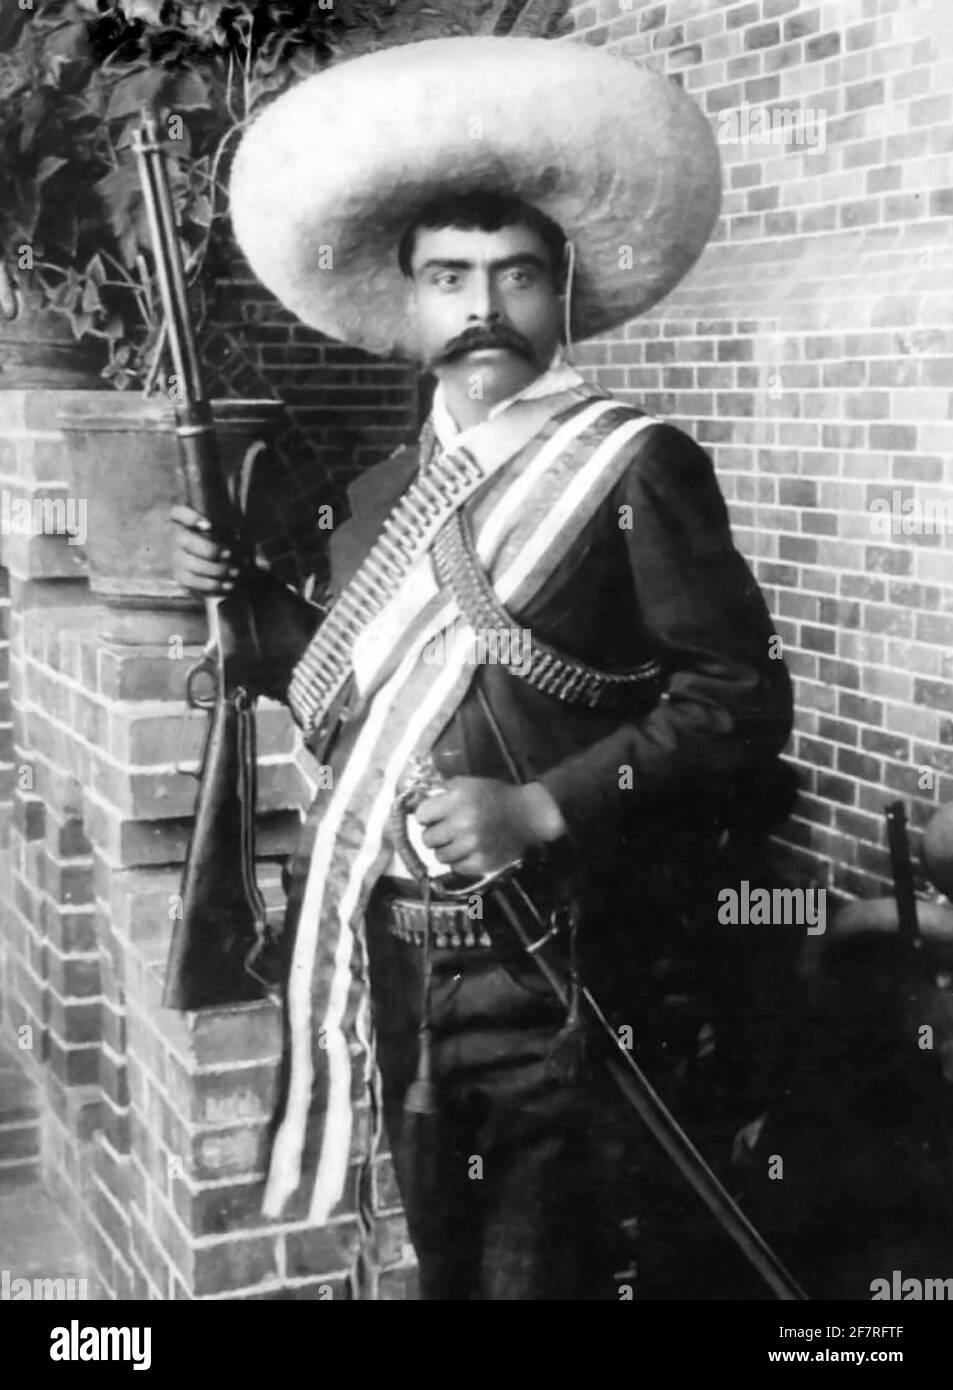 Emiliano Zapata. Ritratto del generale rivoluzionario messicano Emiliano Zapata Salazar (1879-1919) durante la Rivoluzione messicana, Bain News Service, 1911 Foto Stock